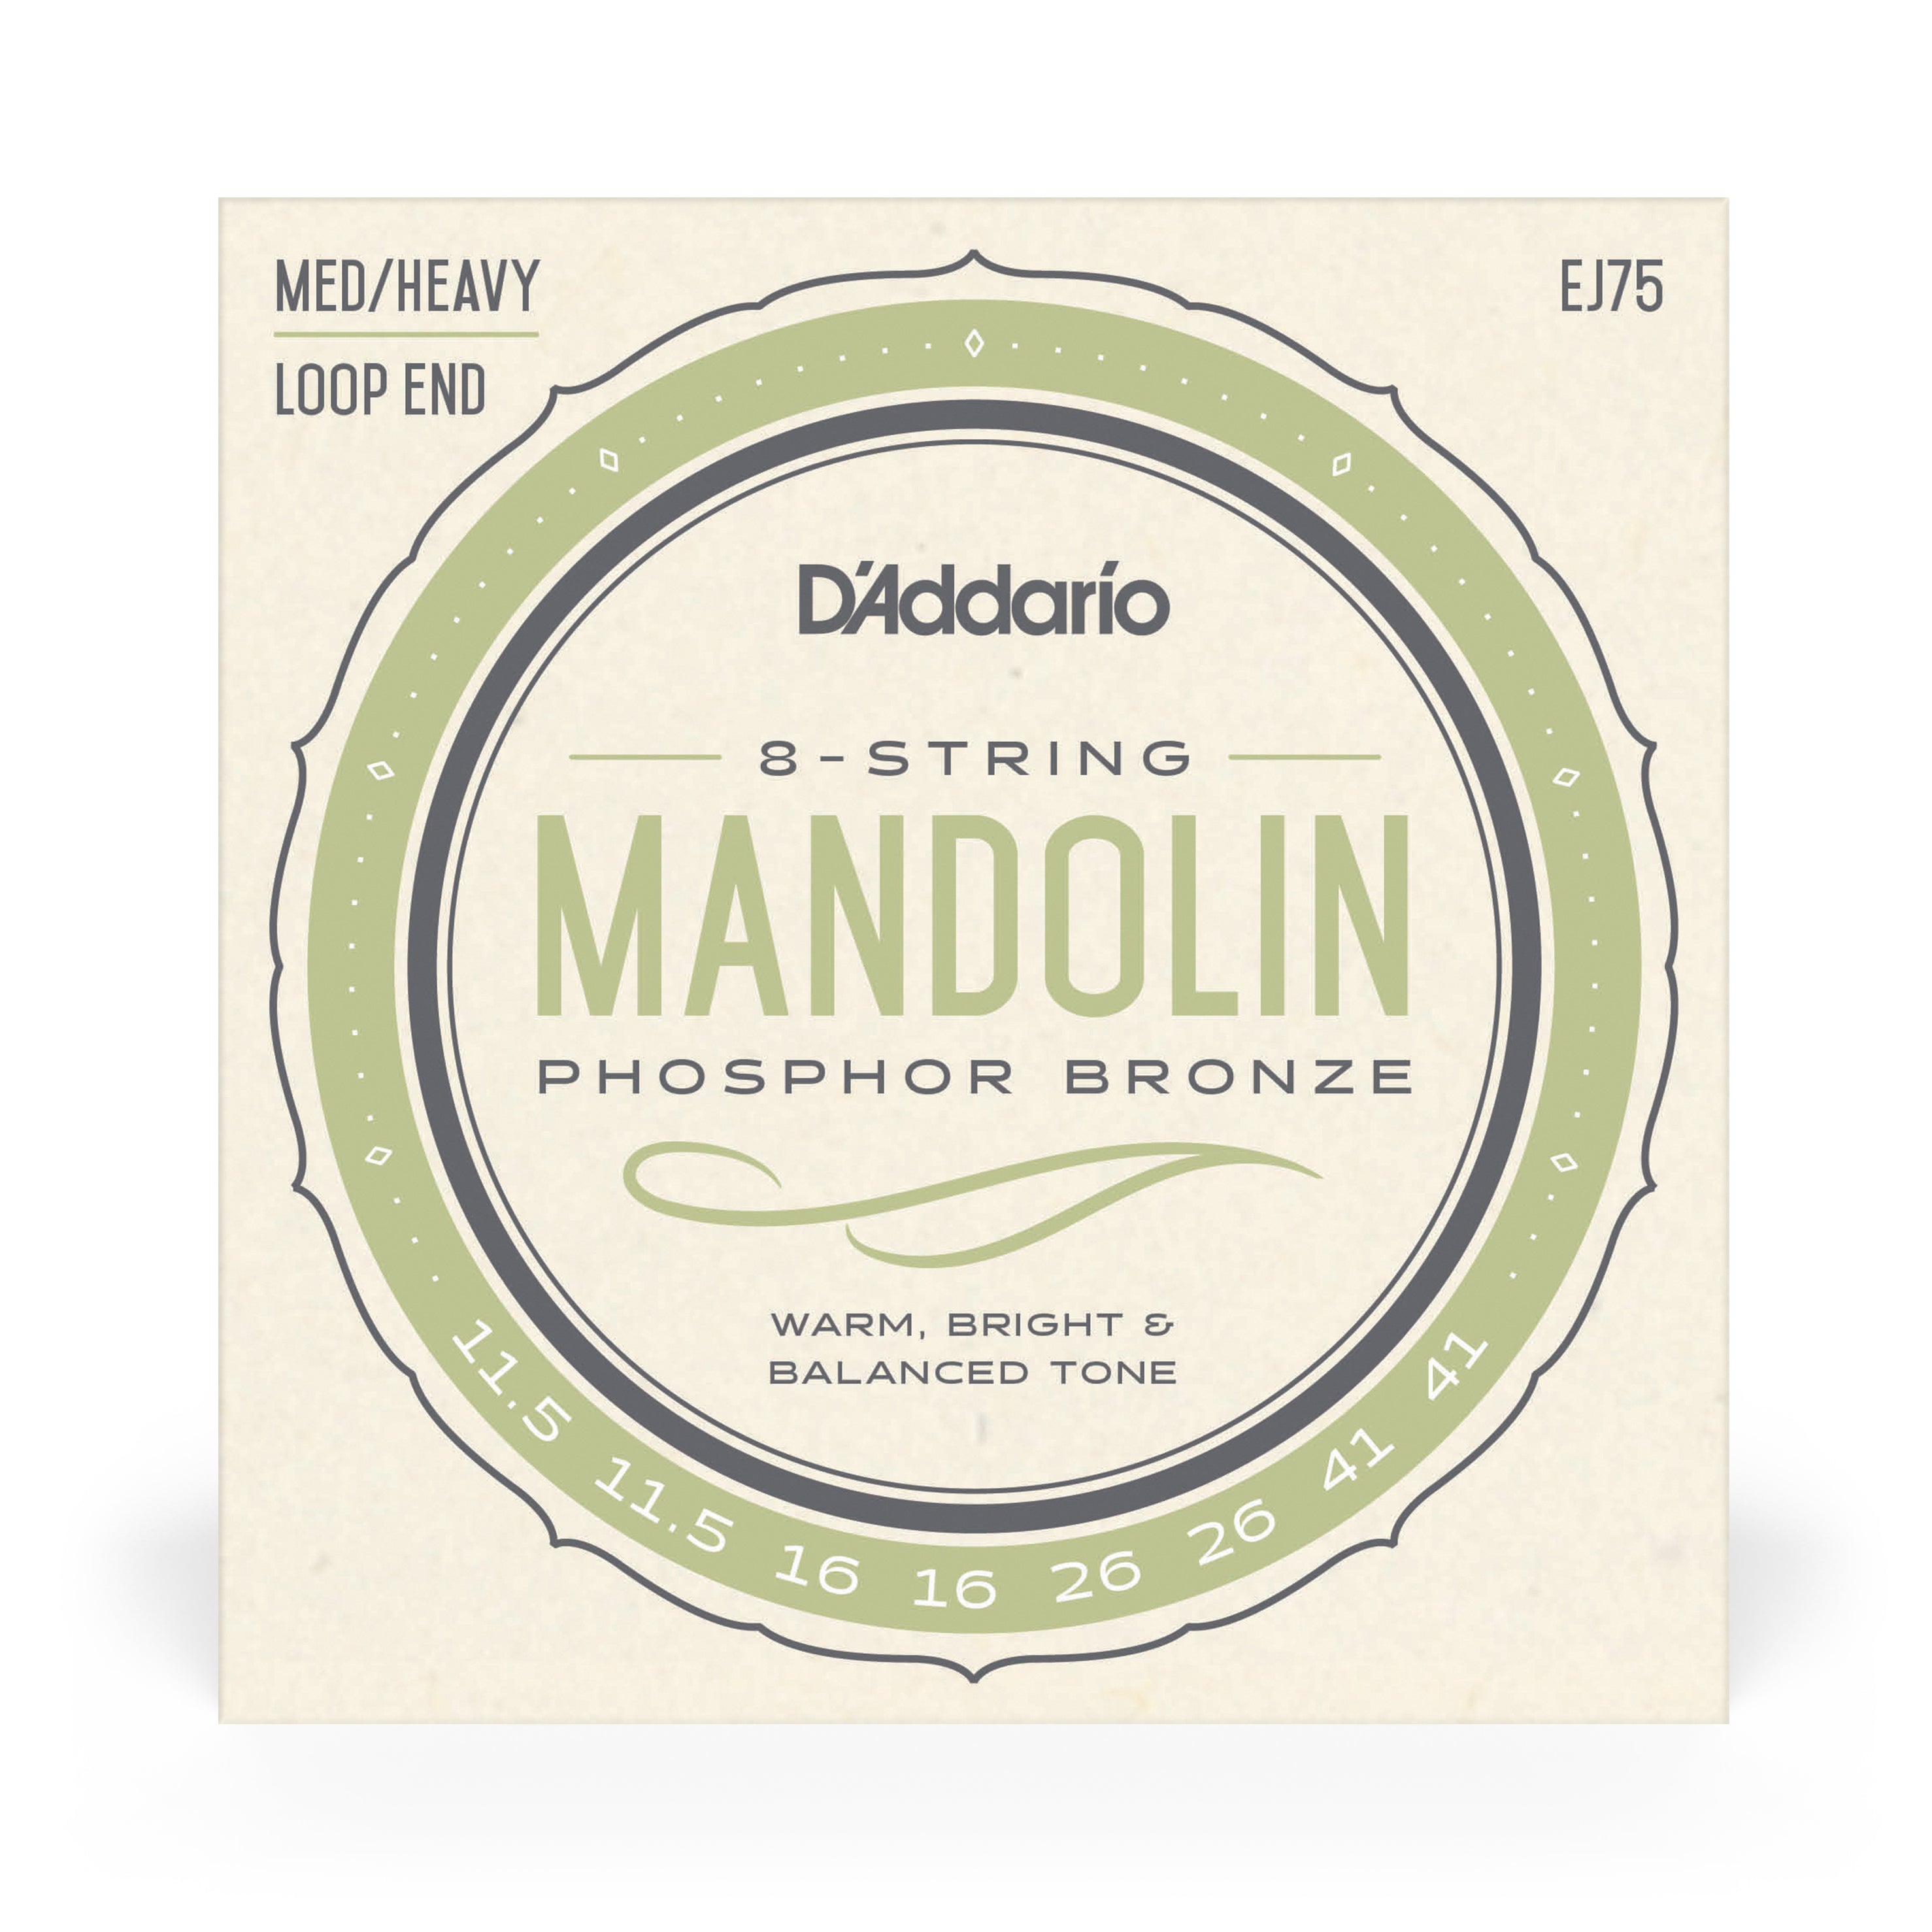 D'Addario EJ75 Mandolin Strings, Phosphor Bronze Wound, Loop End, 11.5-41 Medium-Heavy